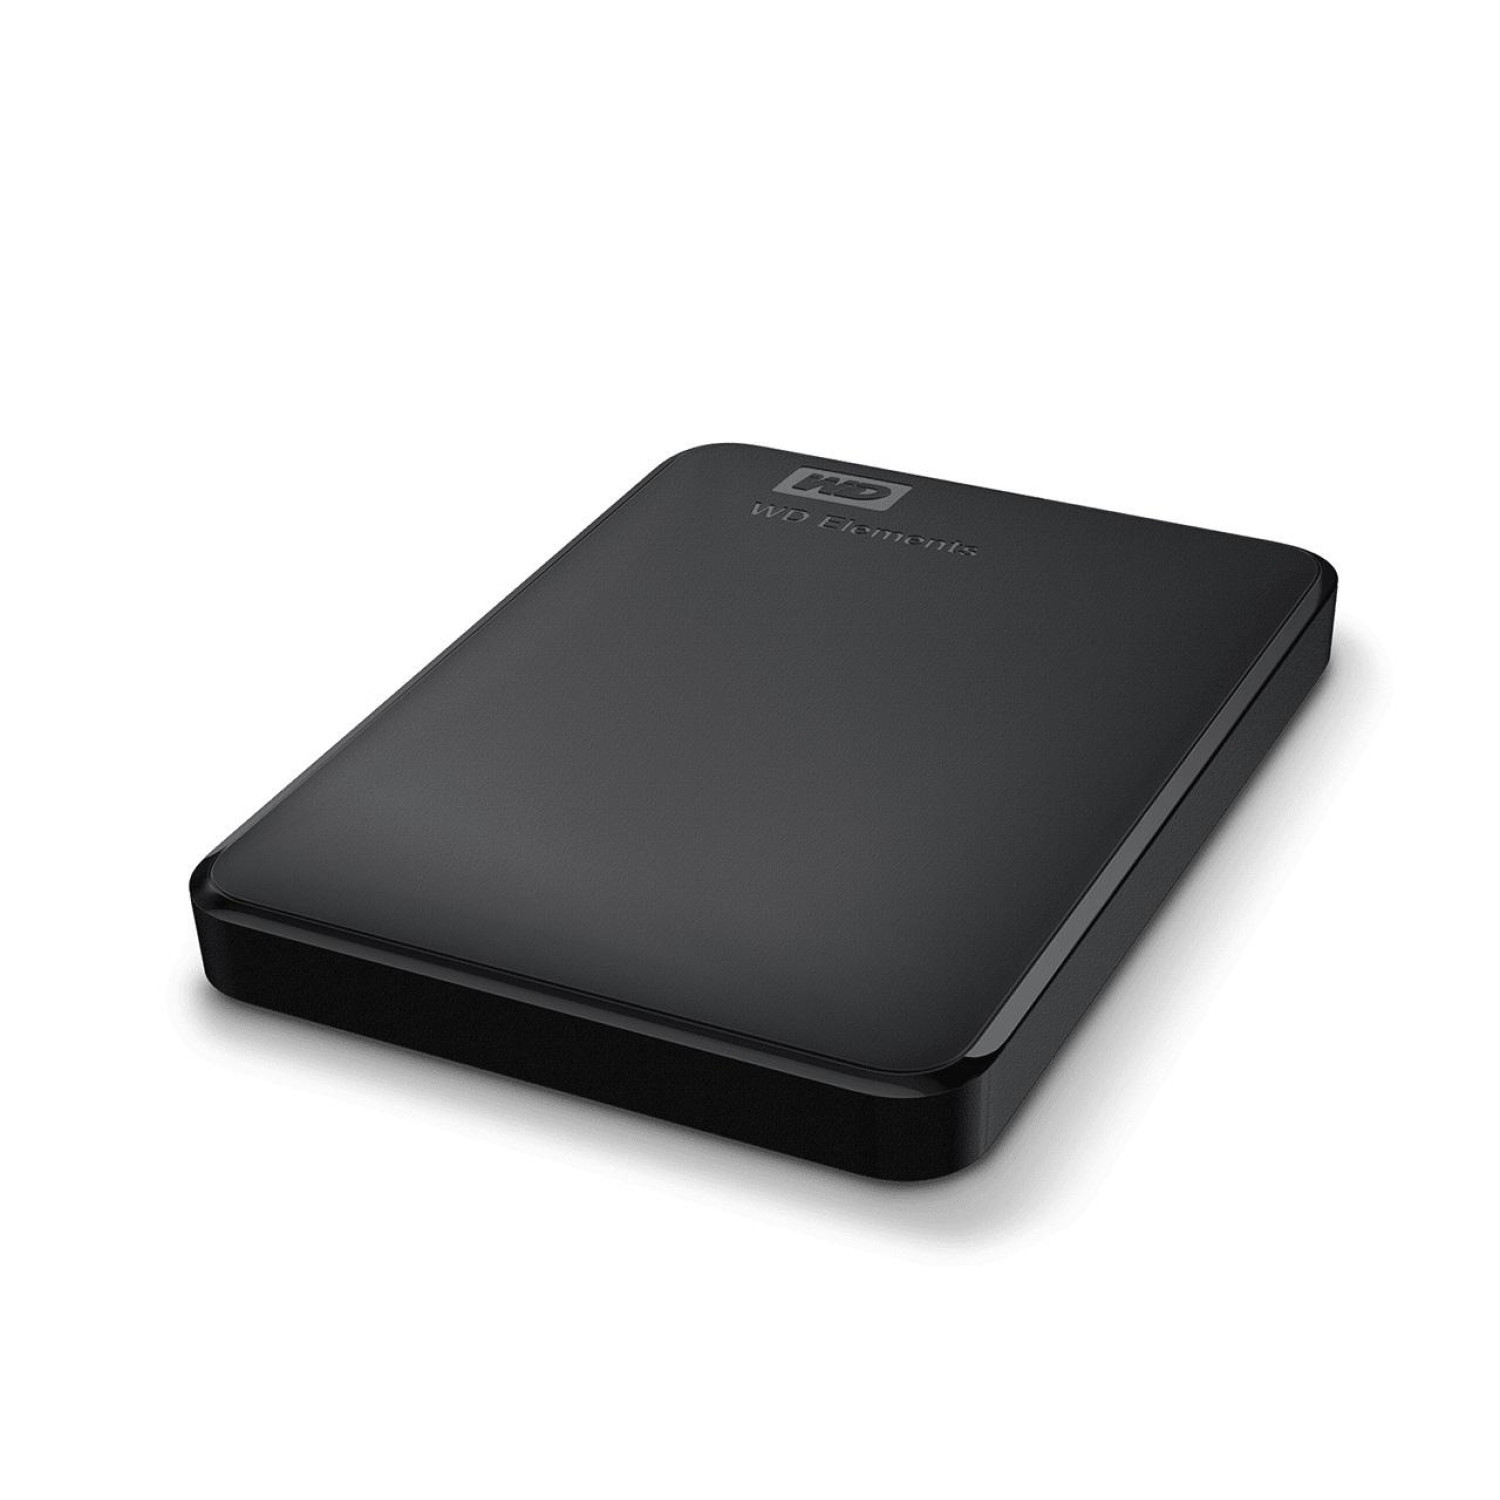 Външен хард диск Western Digital Elements Portable, 1TB, 2.5", USB 3.0, Черен